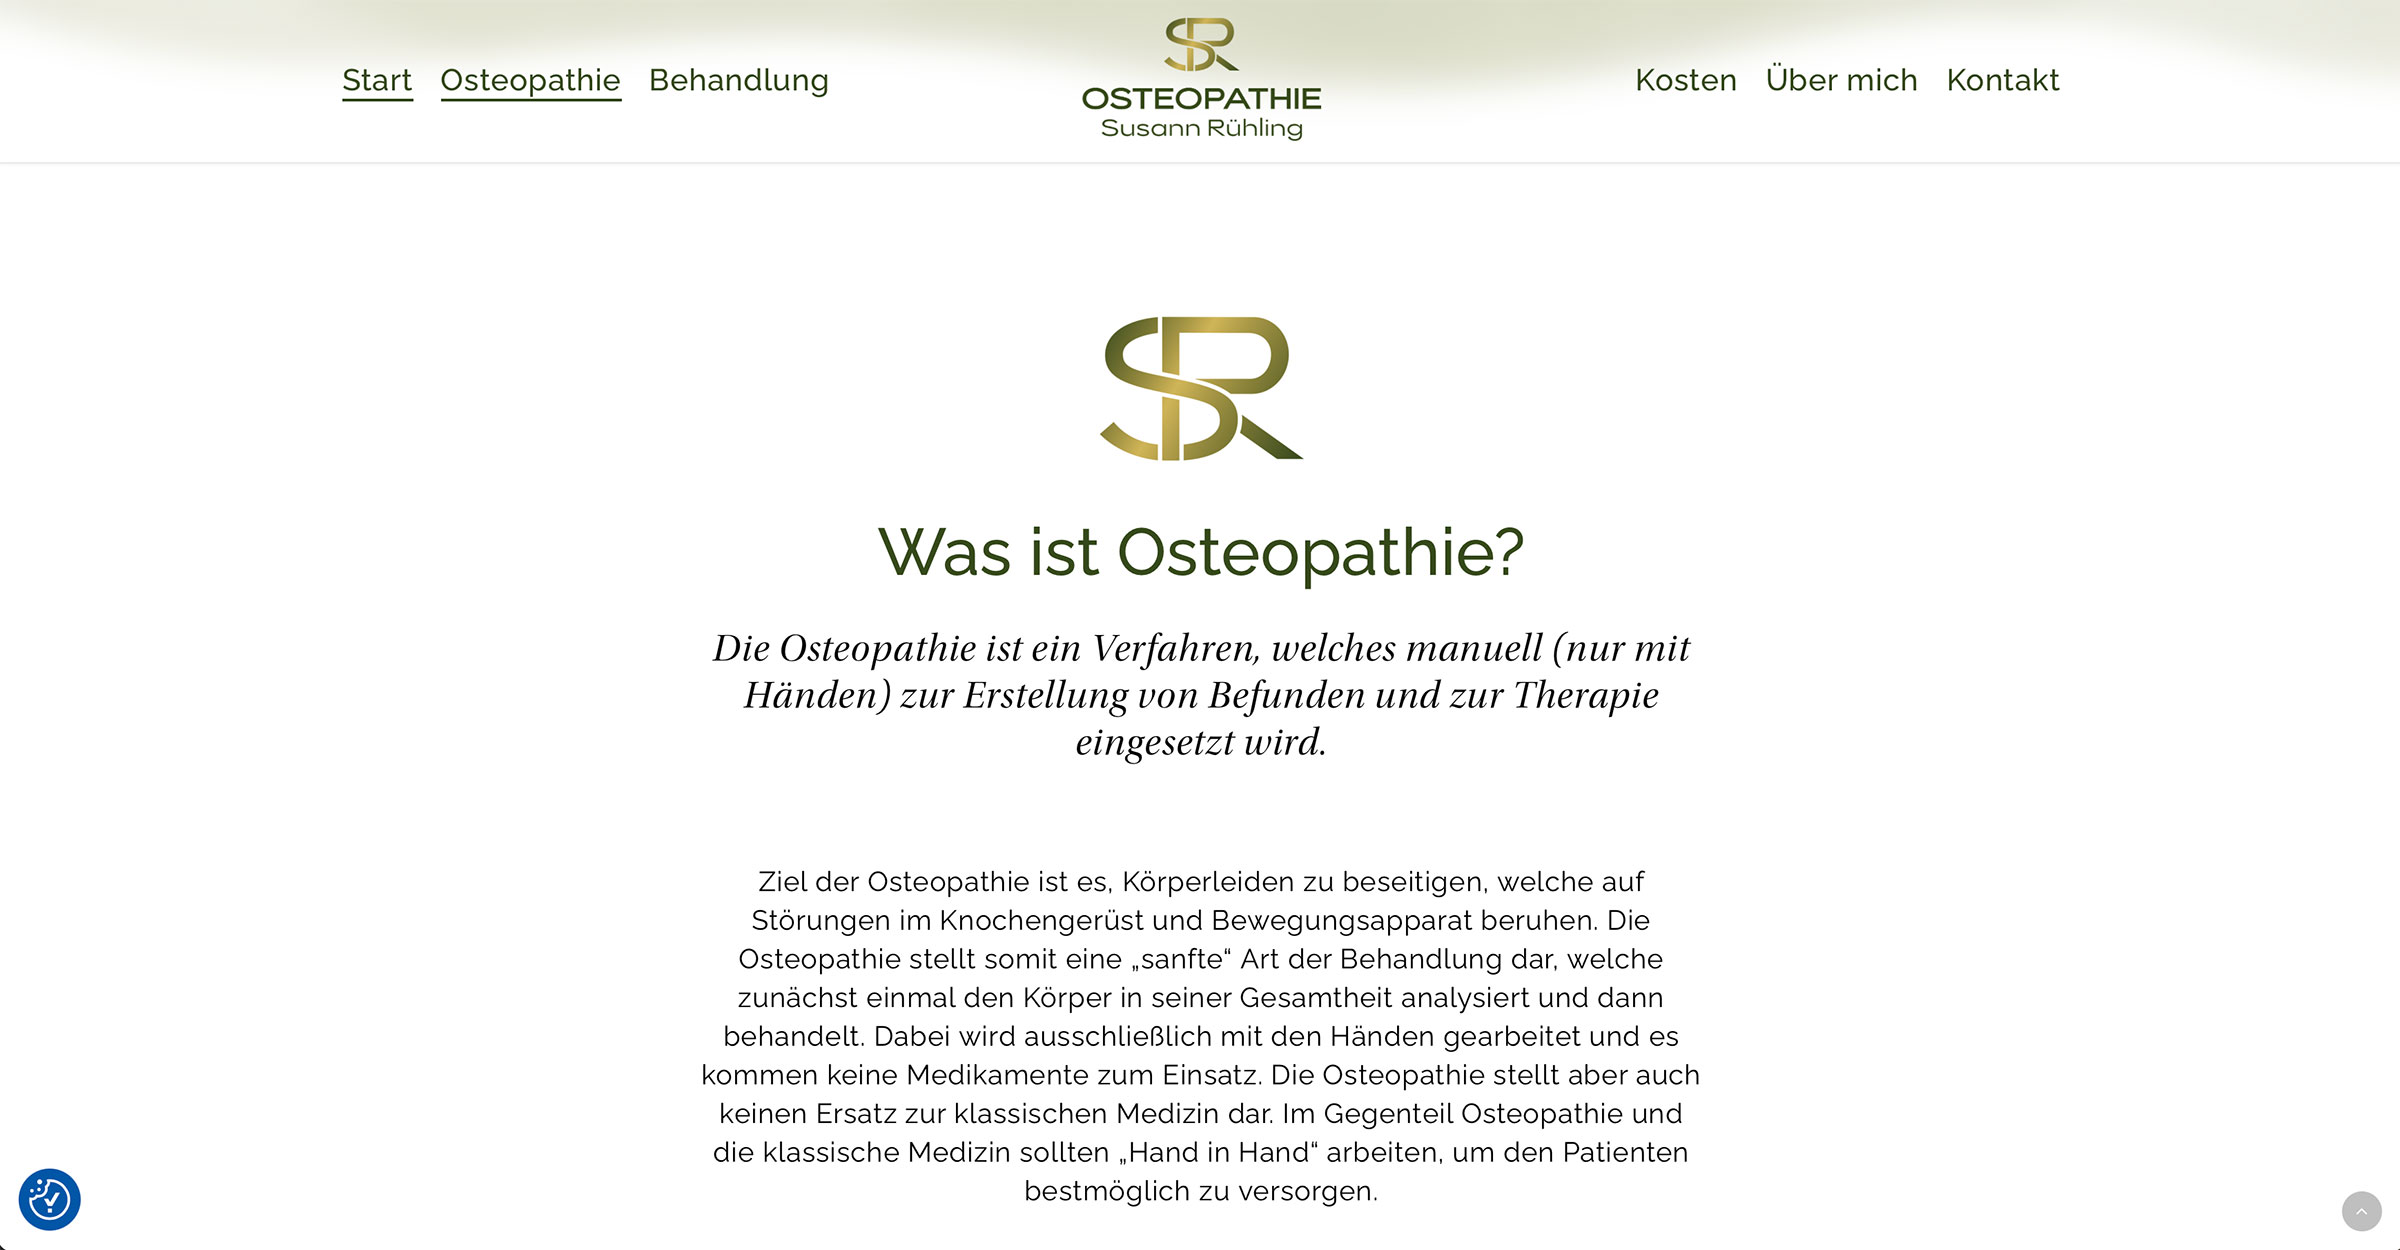 Webdesign für Osteopathie Gera